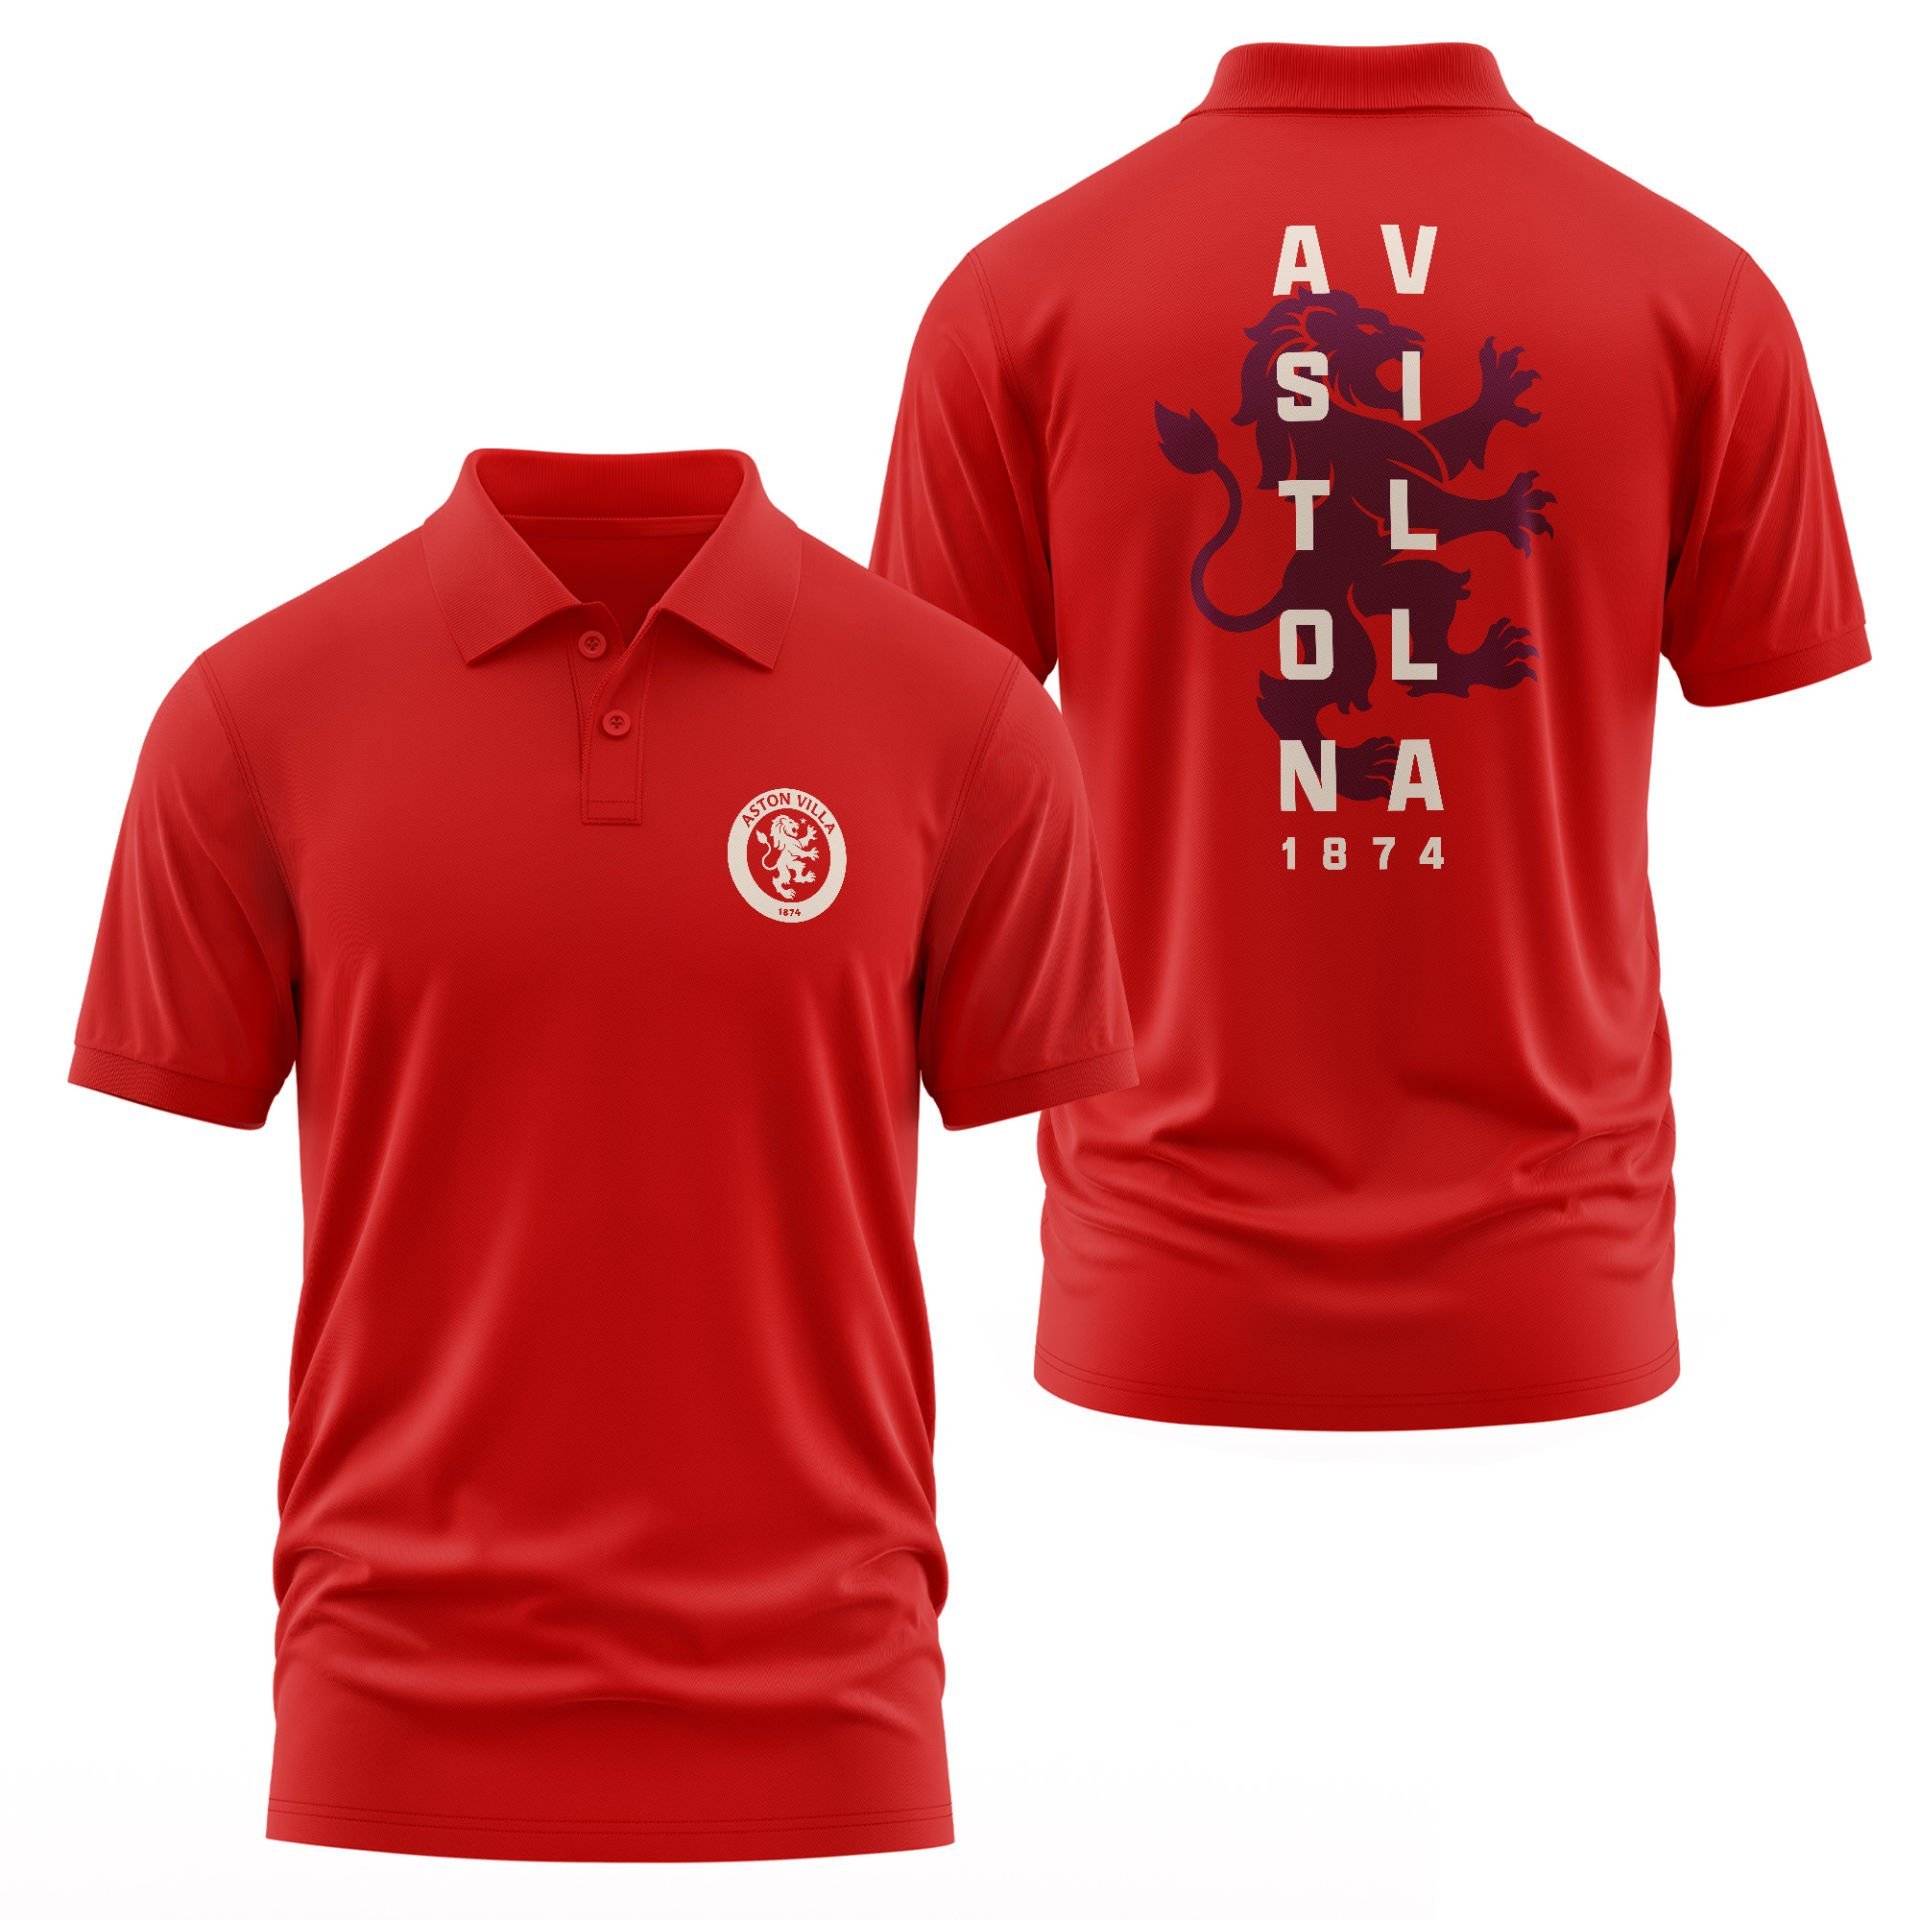 Aston Villa Football Club Kırmızı Polo Tişört